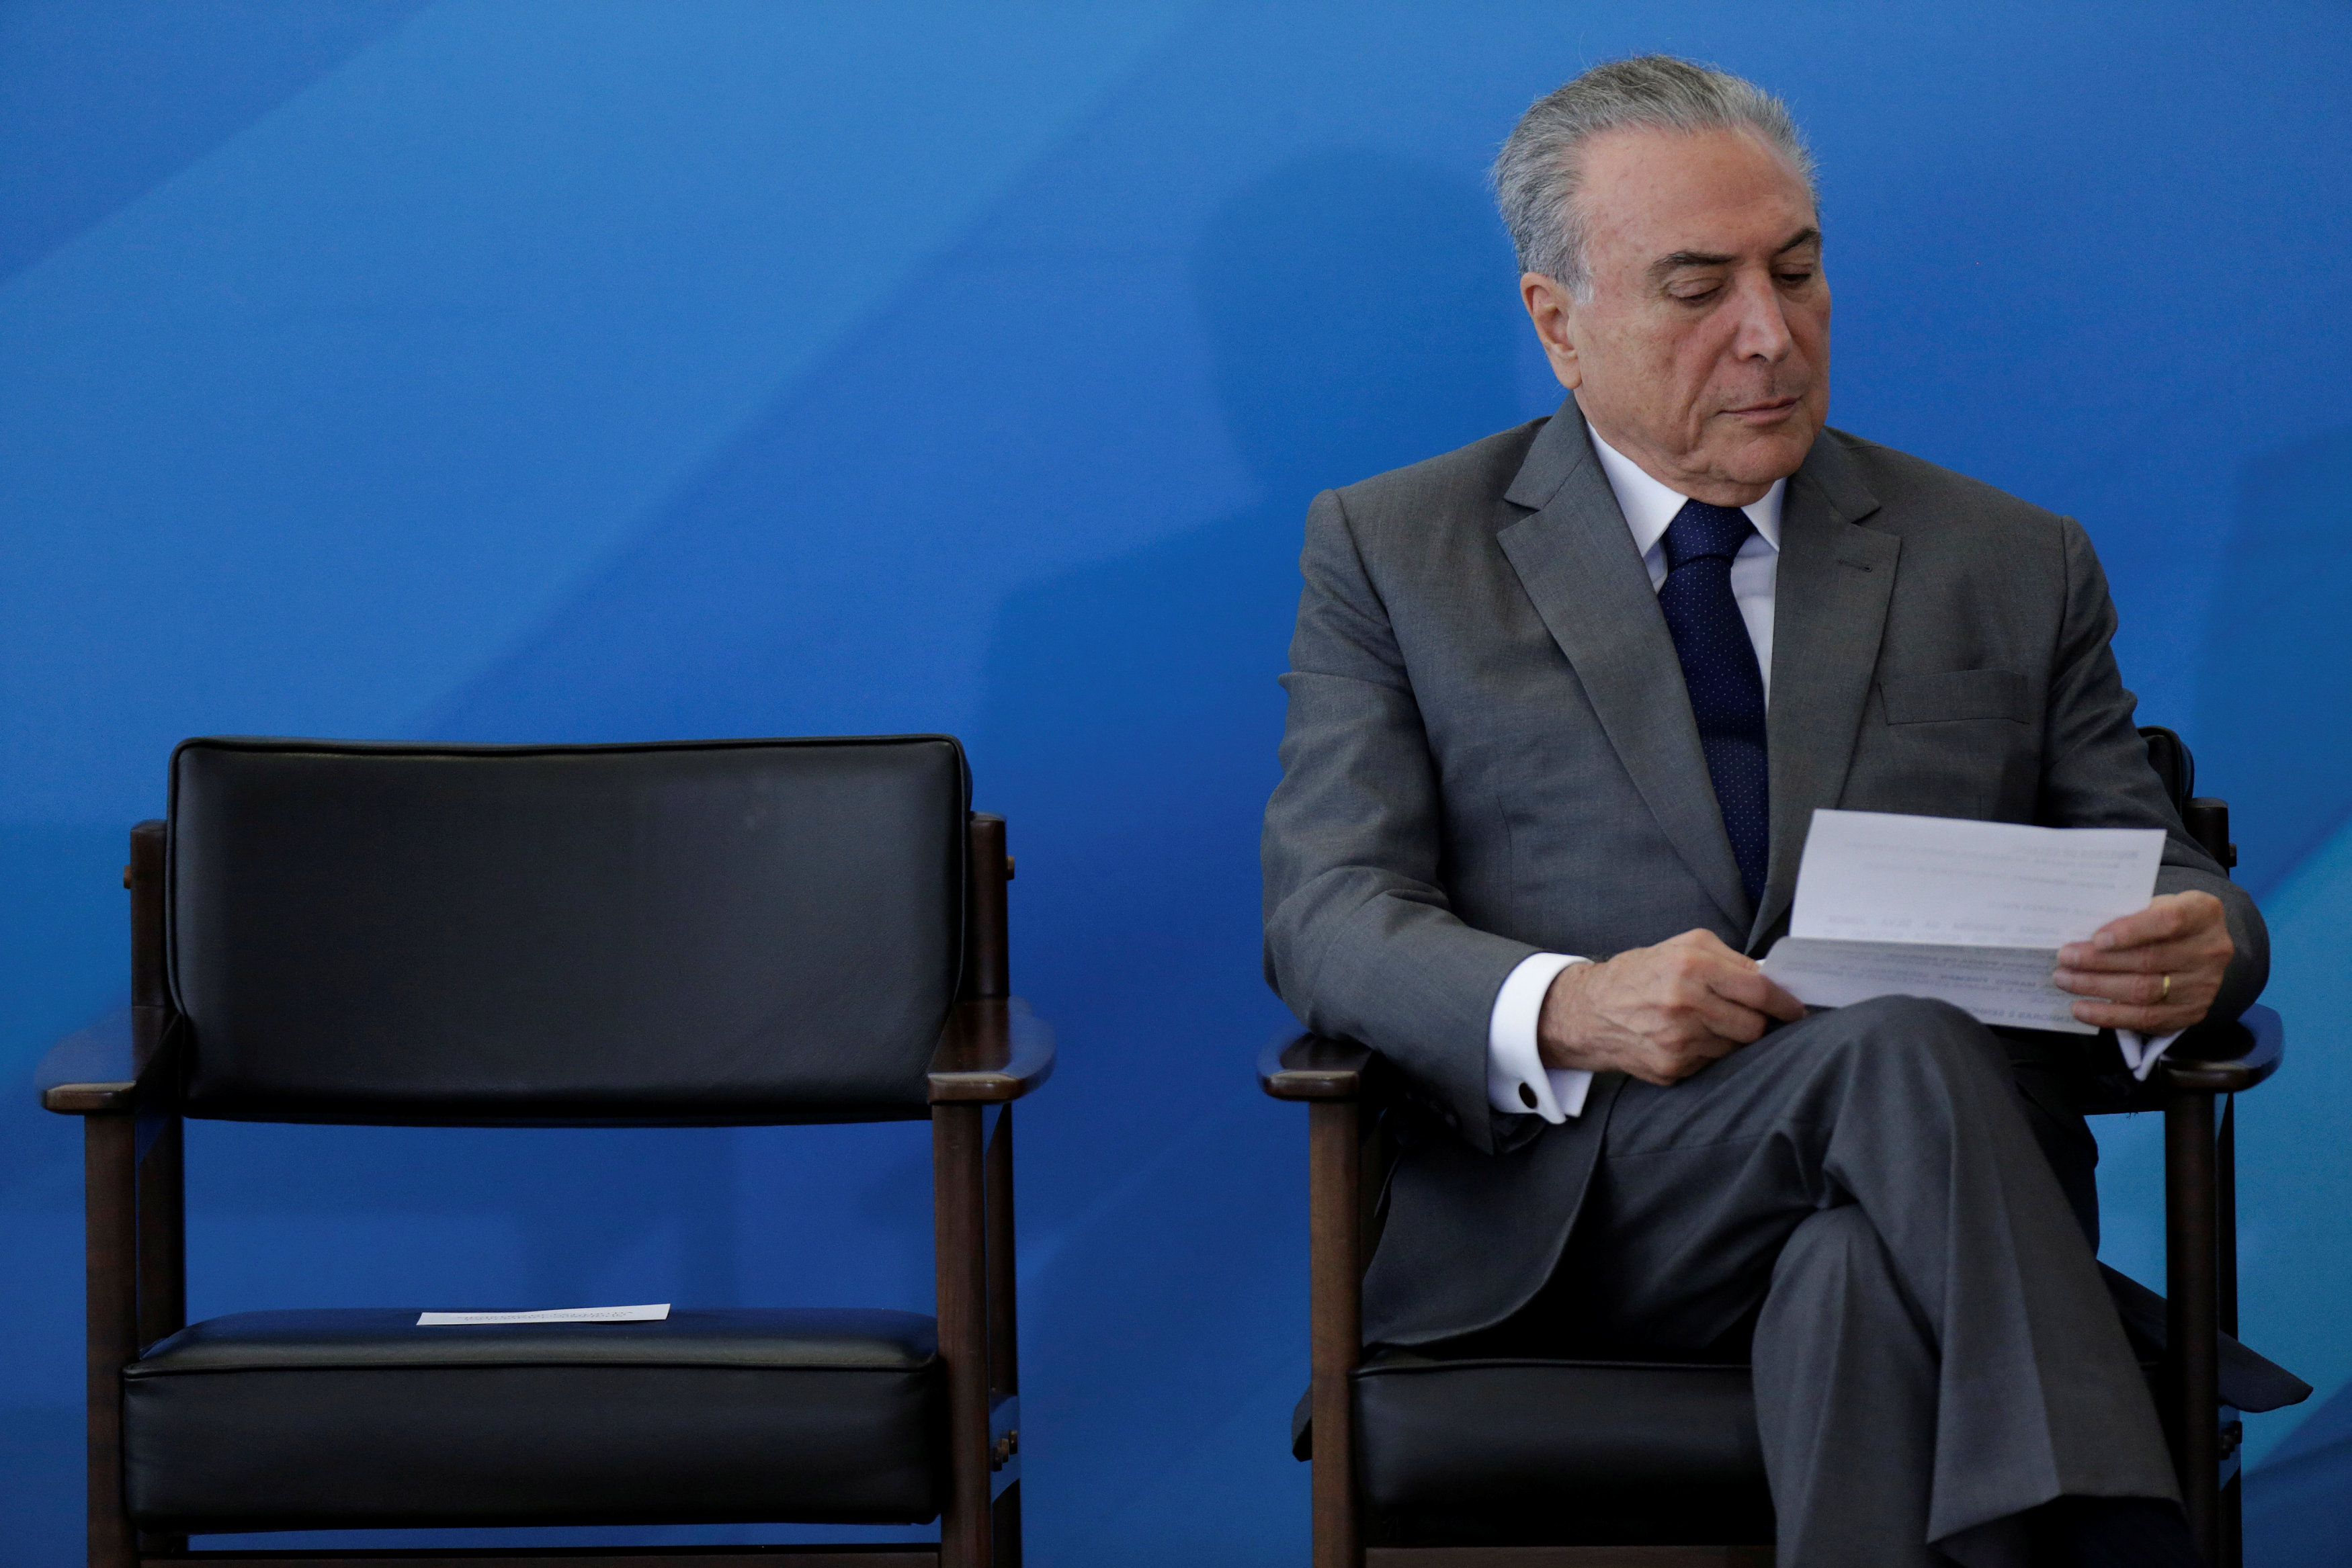 الرئيس البرازيلى ميشال تامر خلال مراسم اقيمت فى قصر بلانالتو فى برازيليا